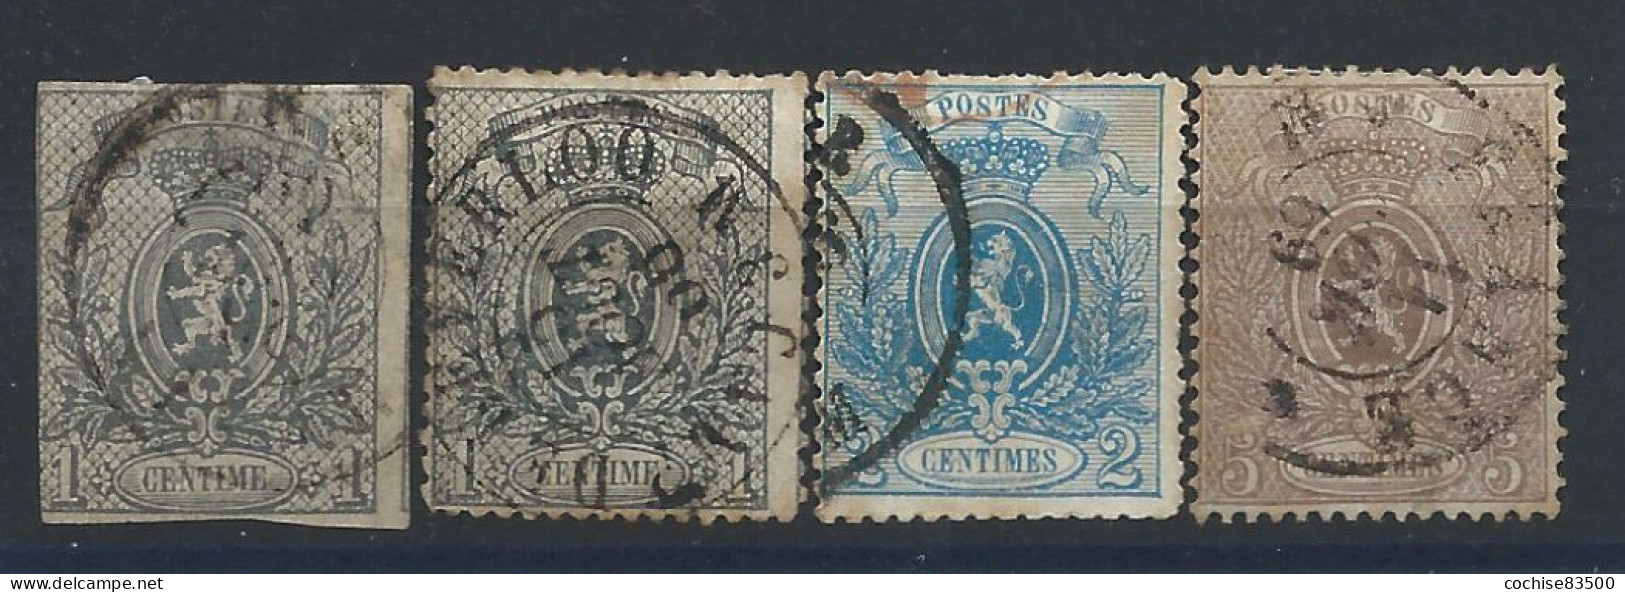 Belgique N°22/25 Obl (FU) 1866/67 - Armoiries - 1866-1867 Petit Lion (Kleiner Löwe)